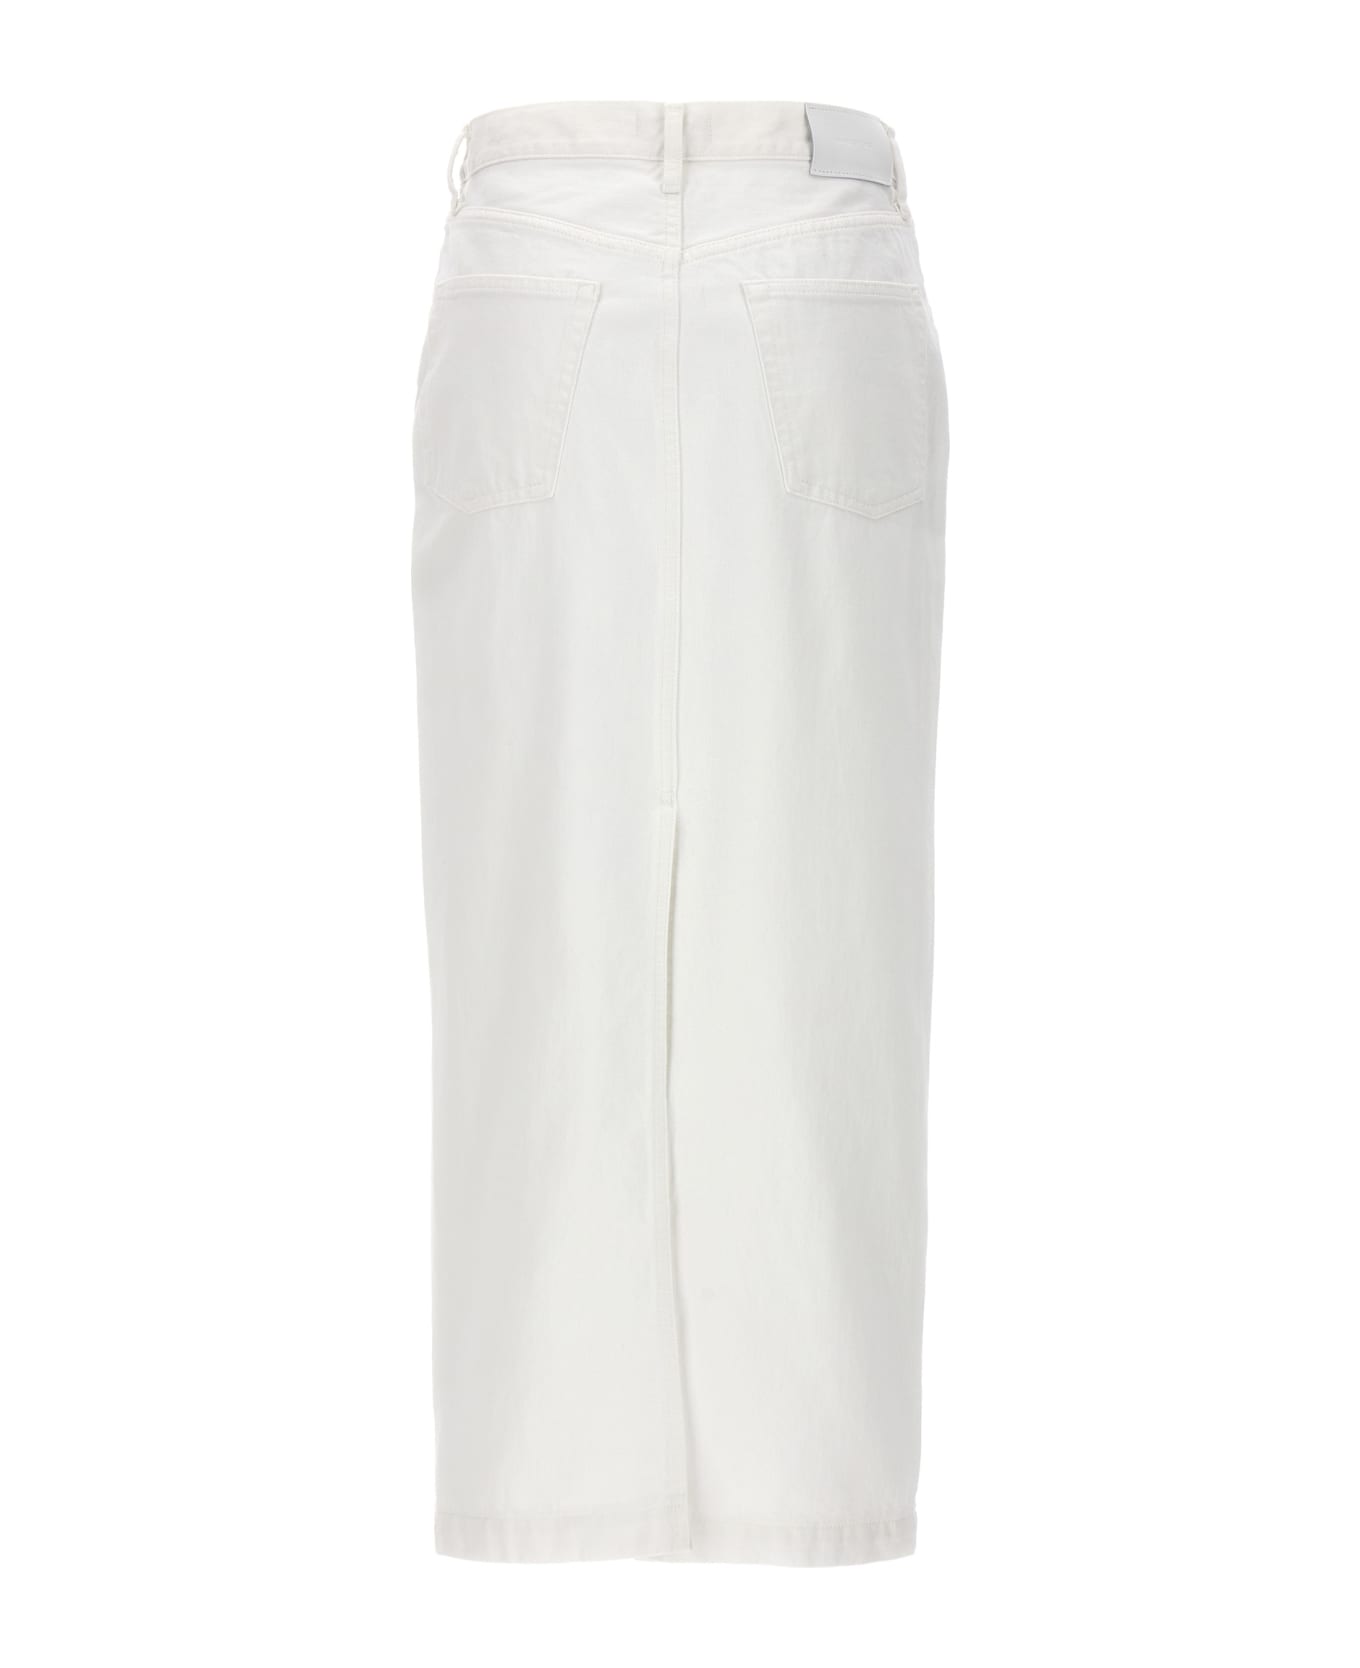 WARDROBE.NYC Denim Midi Skirt - WHITE スカート